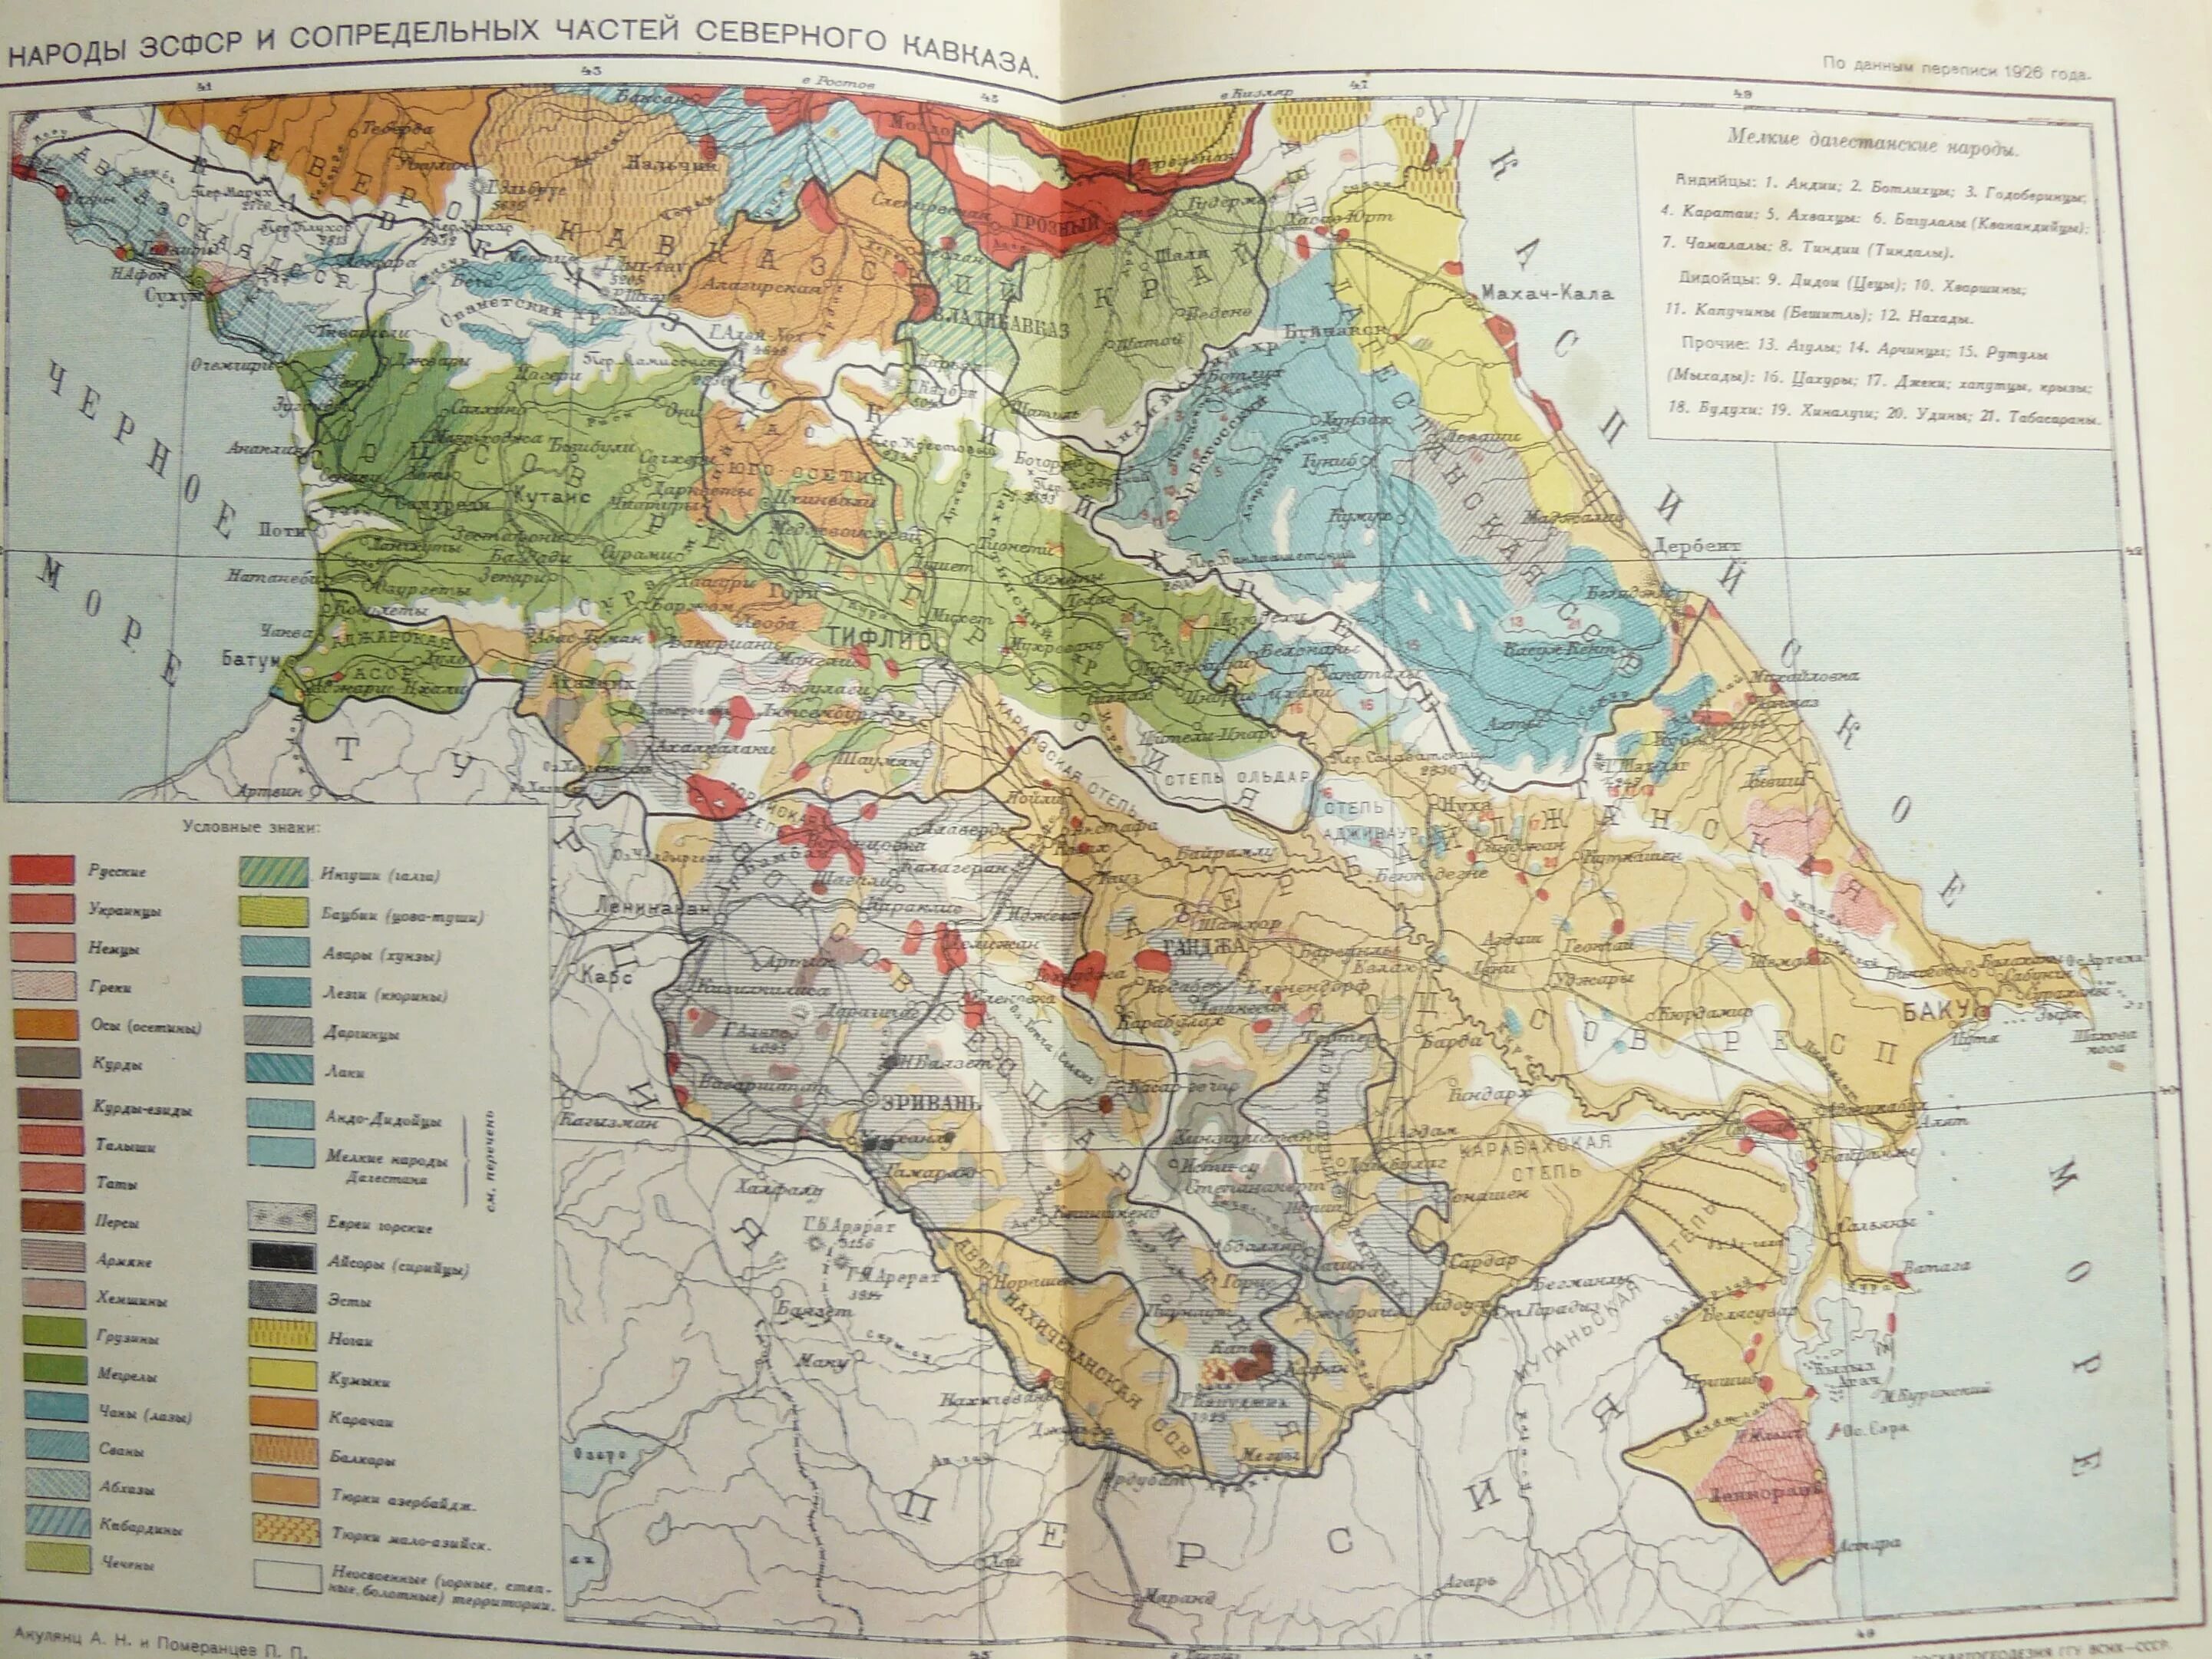 Карта Азербайджана 1926 года. Этническая карта Северного Кавказа 1926 года. Карта Закавказья СССР. Карта Армении 1926.